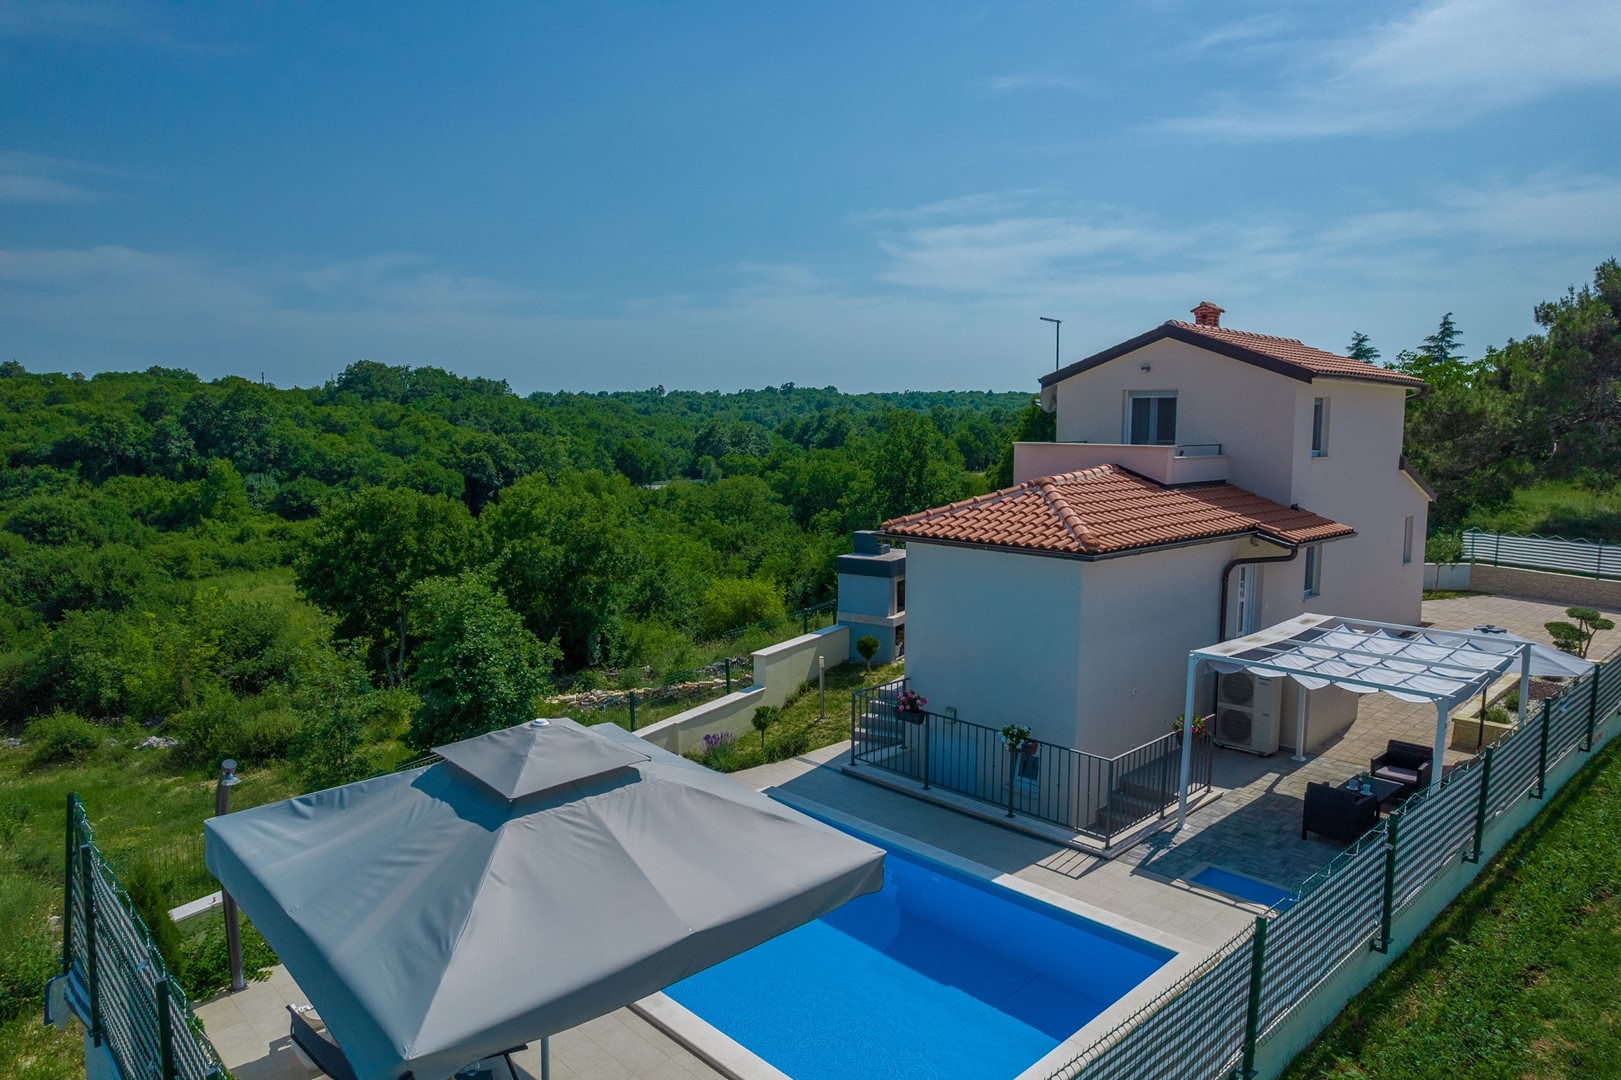 Villa Angelina mit Pool in der Nähe von Rovin  in Kroatien